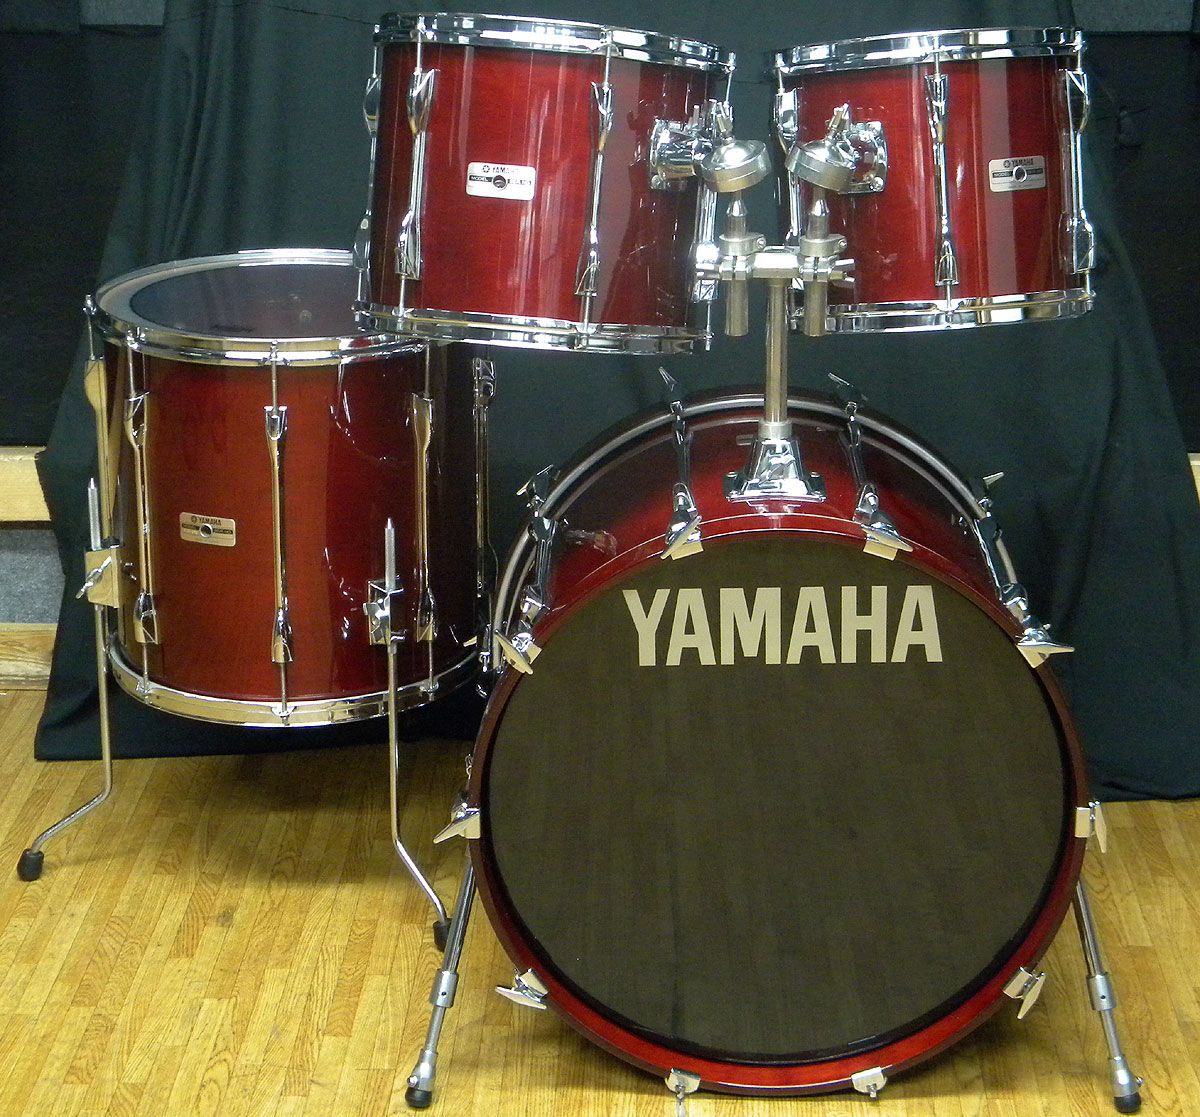 YAMAHA ドラムセットYD9000中古品()売却済みです。あしからずご了承